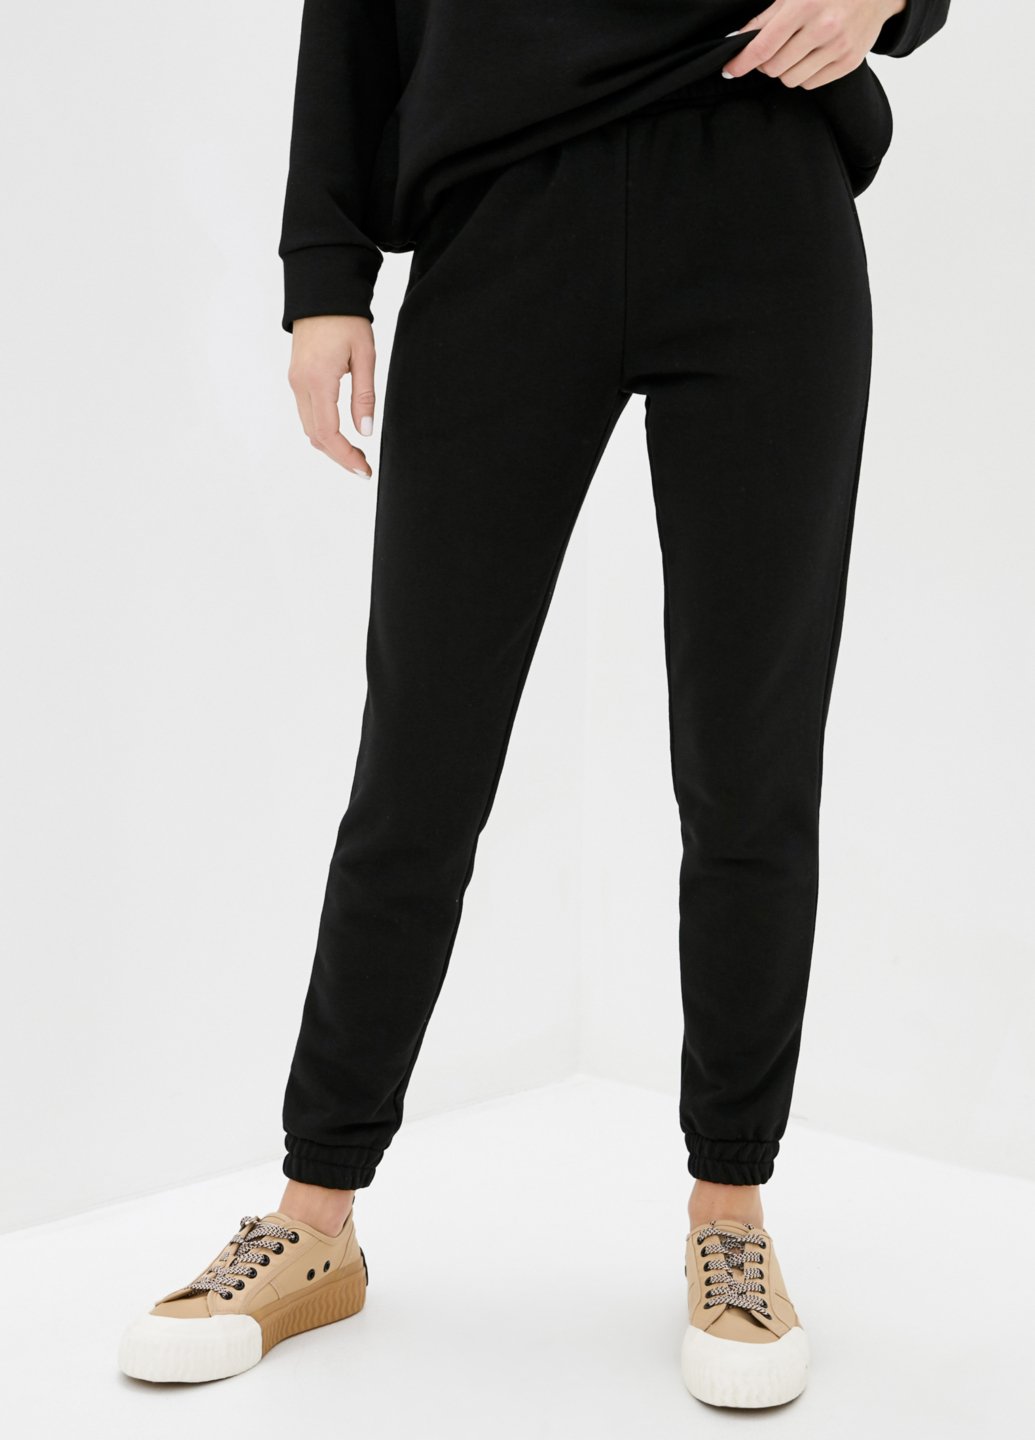 Купить Спортивные штаны женские Merlini Мадрид 600000046 - Черный, 42-44 в интернет-магазине